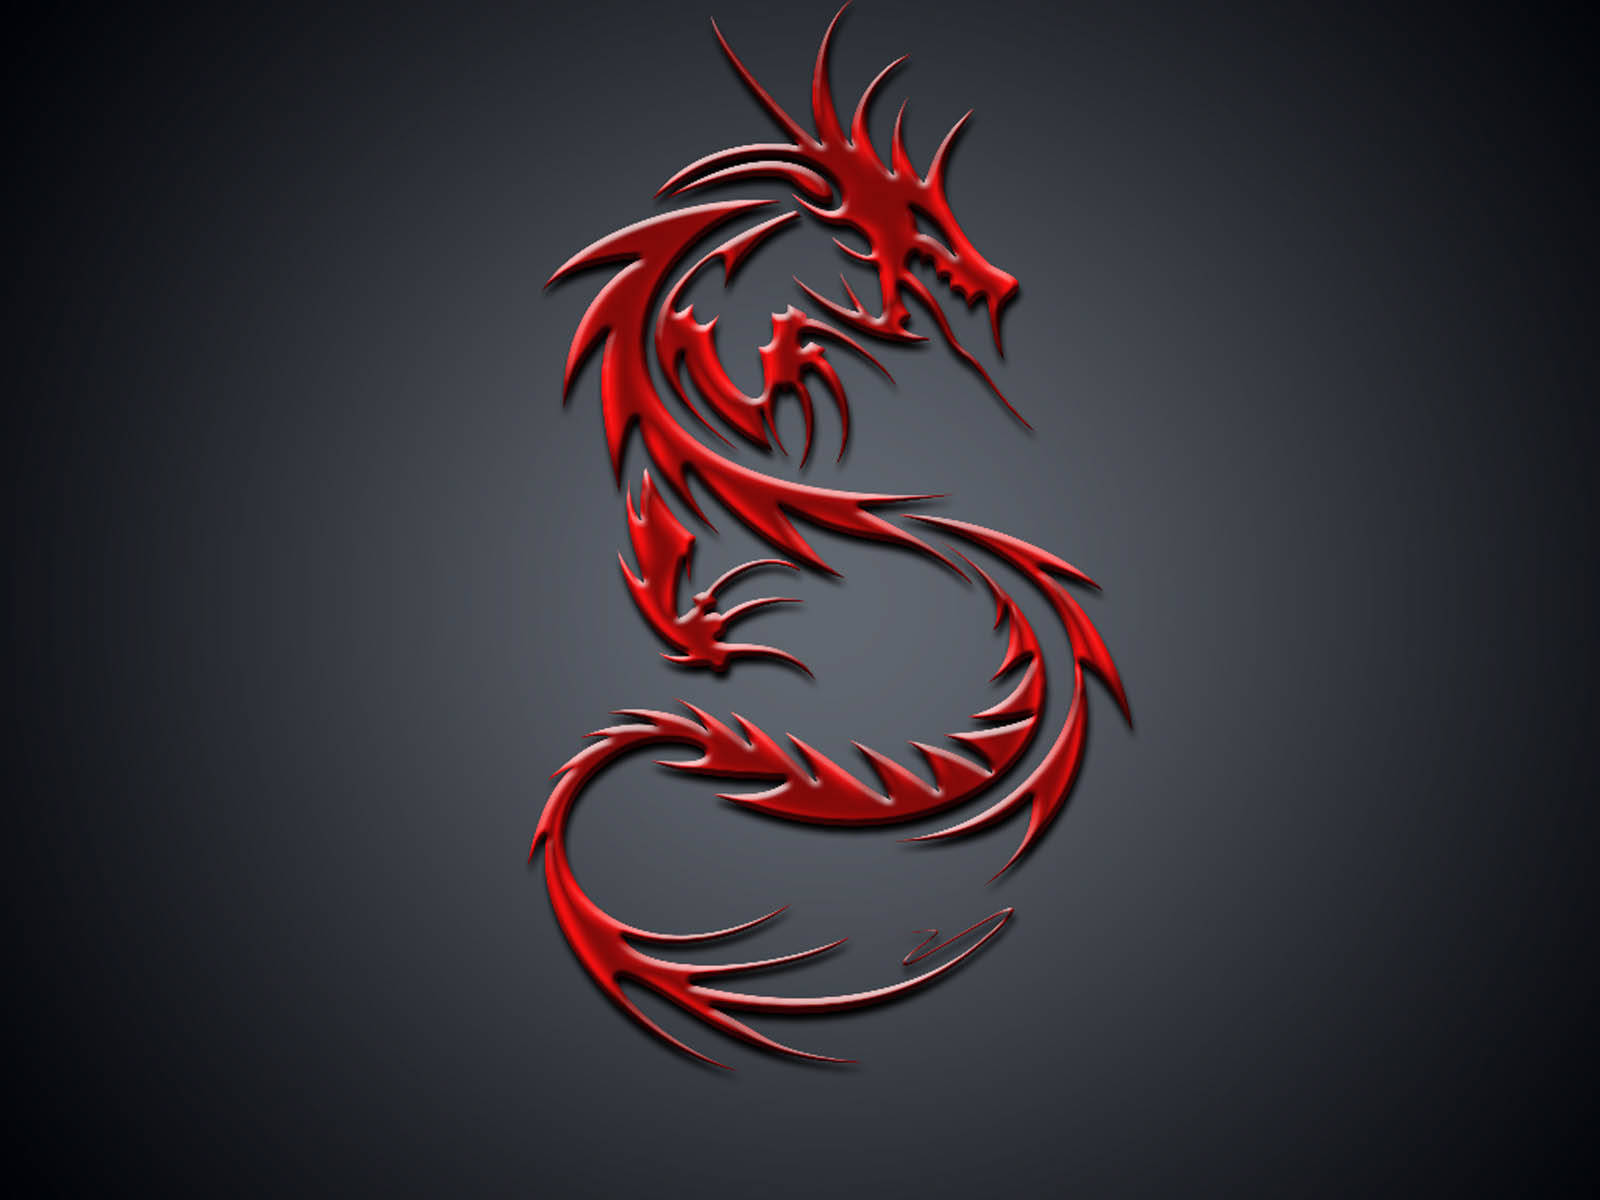 Msi Red Dragon Symbol Wallpaper